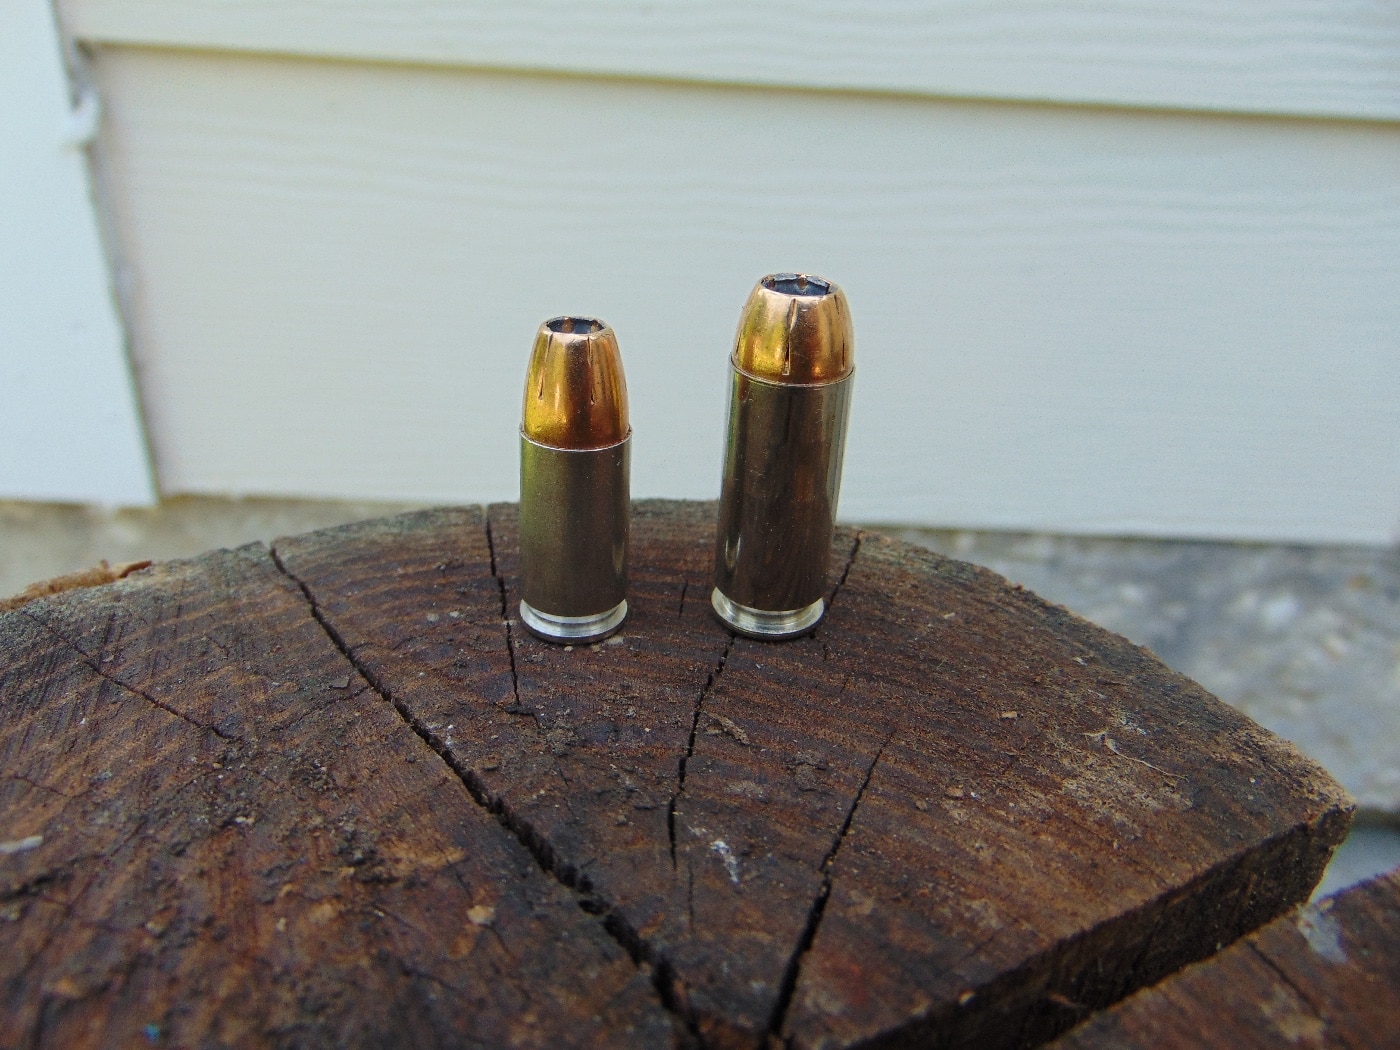 10mm bullet damage